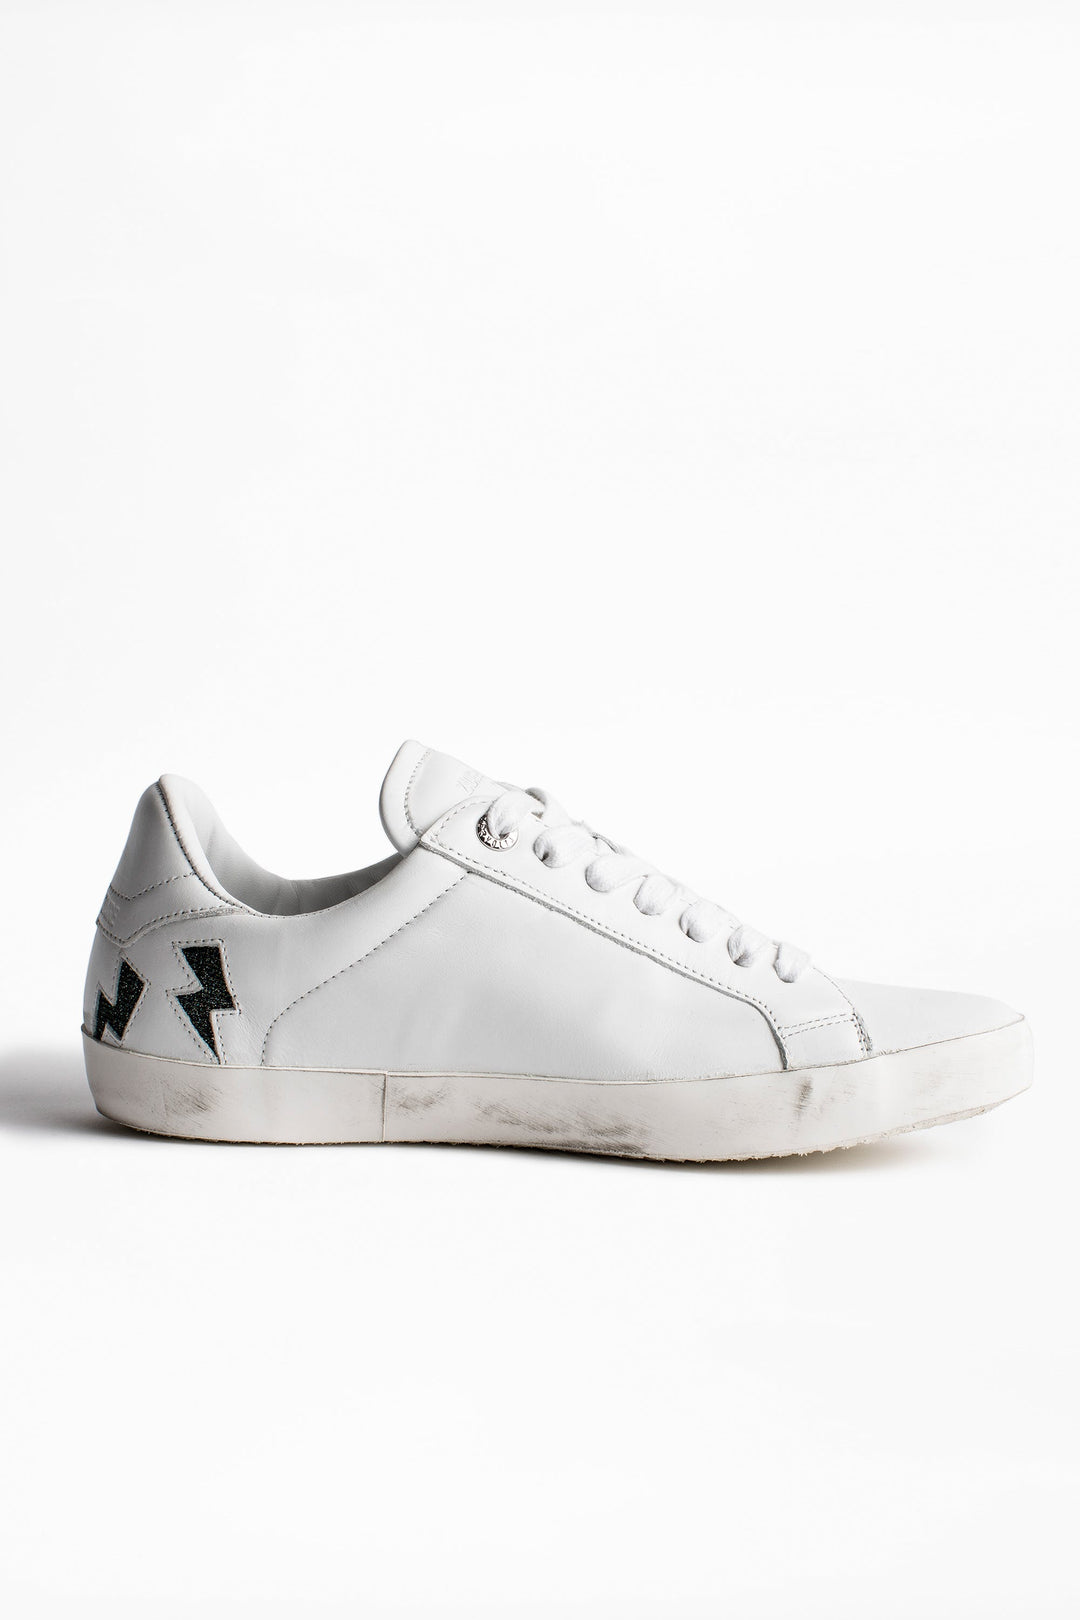 Zadig & Voltaire - Zadig Flash Lurex Sneakers in Blanc